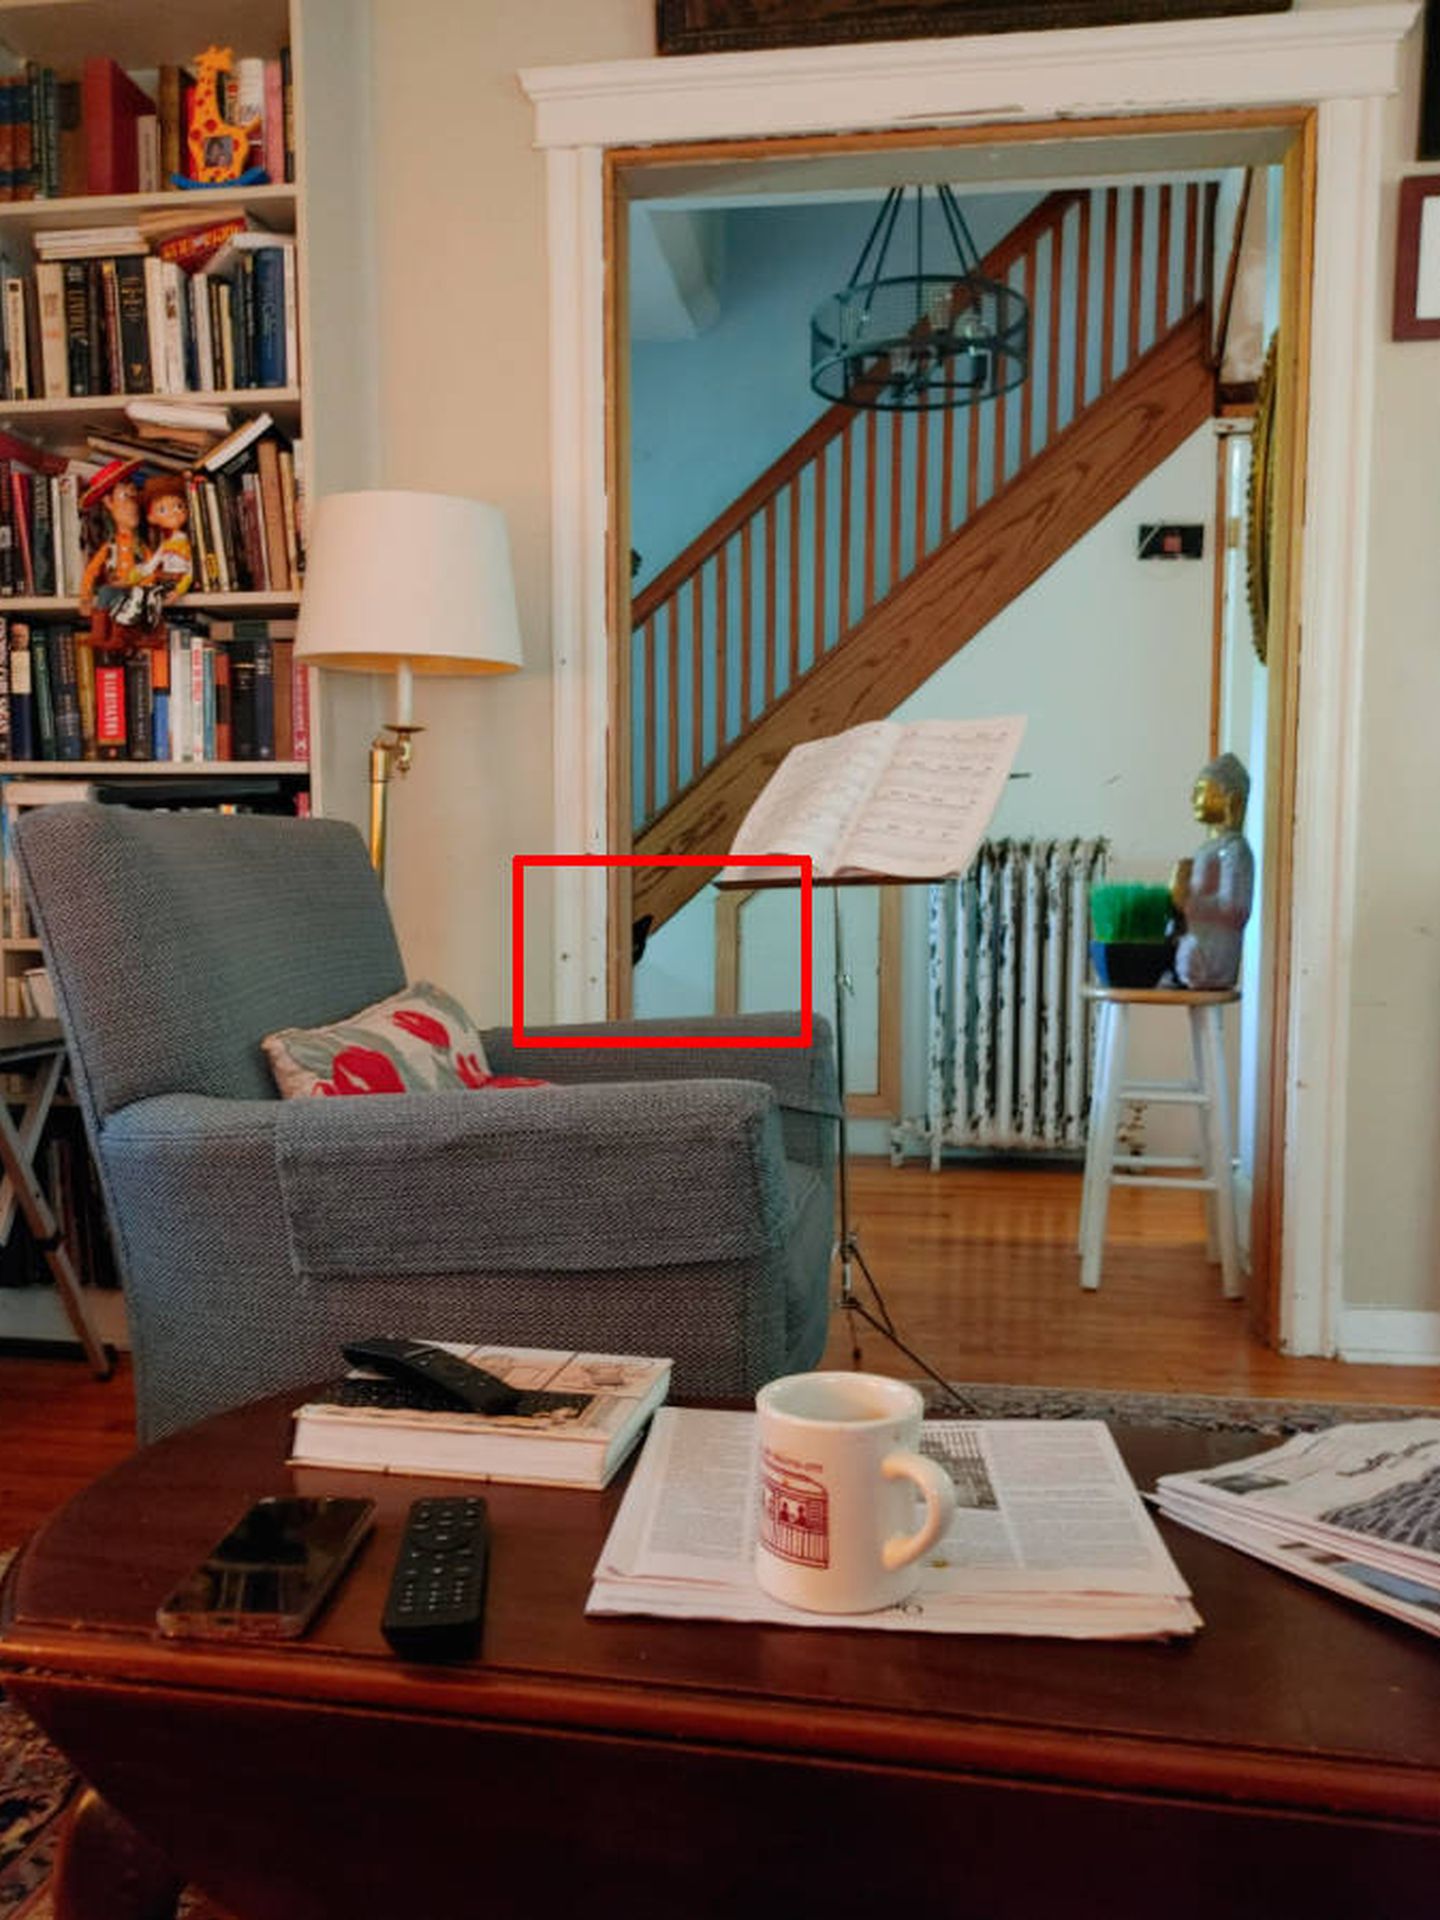 En el recuadro rojo aparece el gato invisible, escondido tras la pared (Foto: Reddit)